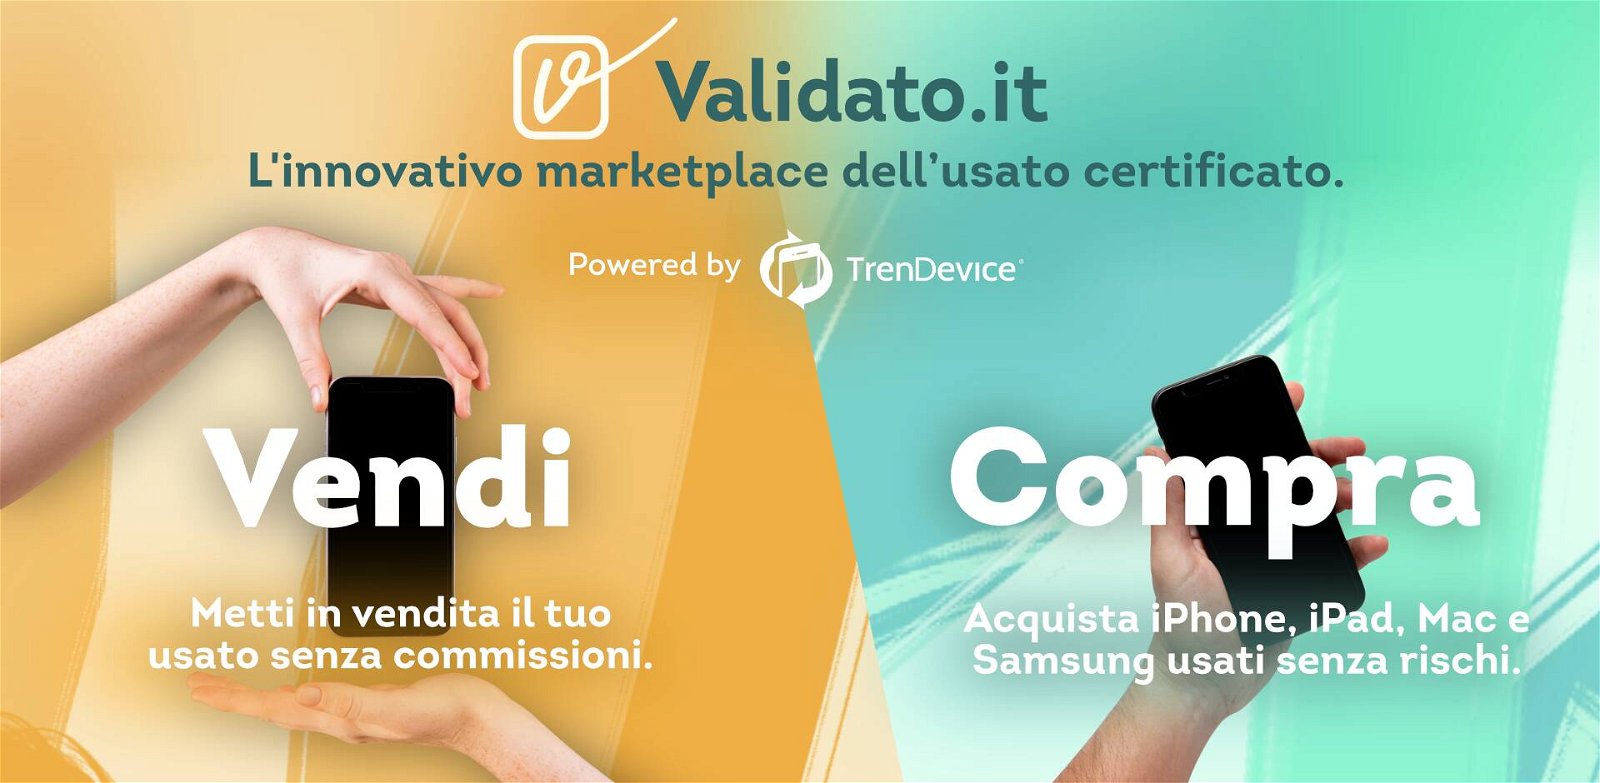 Immagine di TrenDevice presenta Validato, il marketplace dell’usato certificato. Zero commissioni al lancio